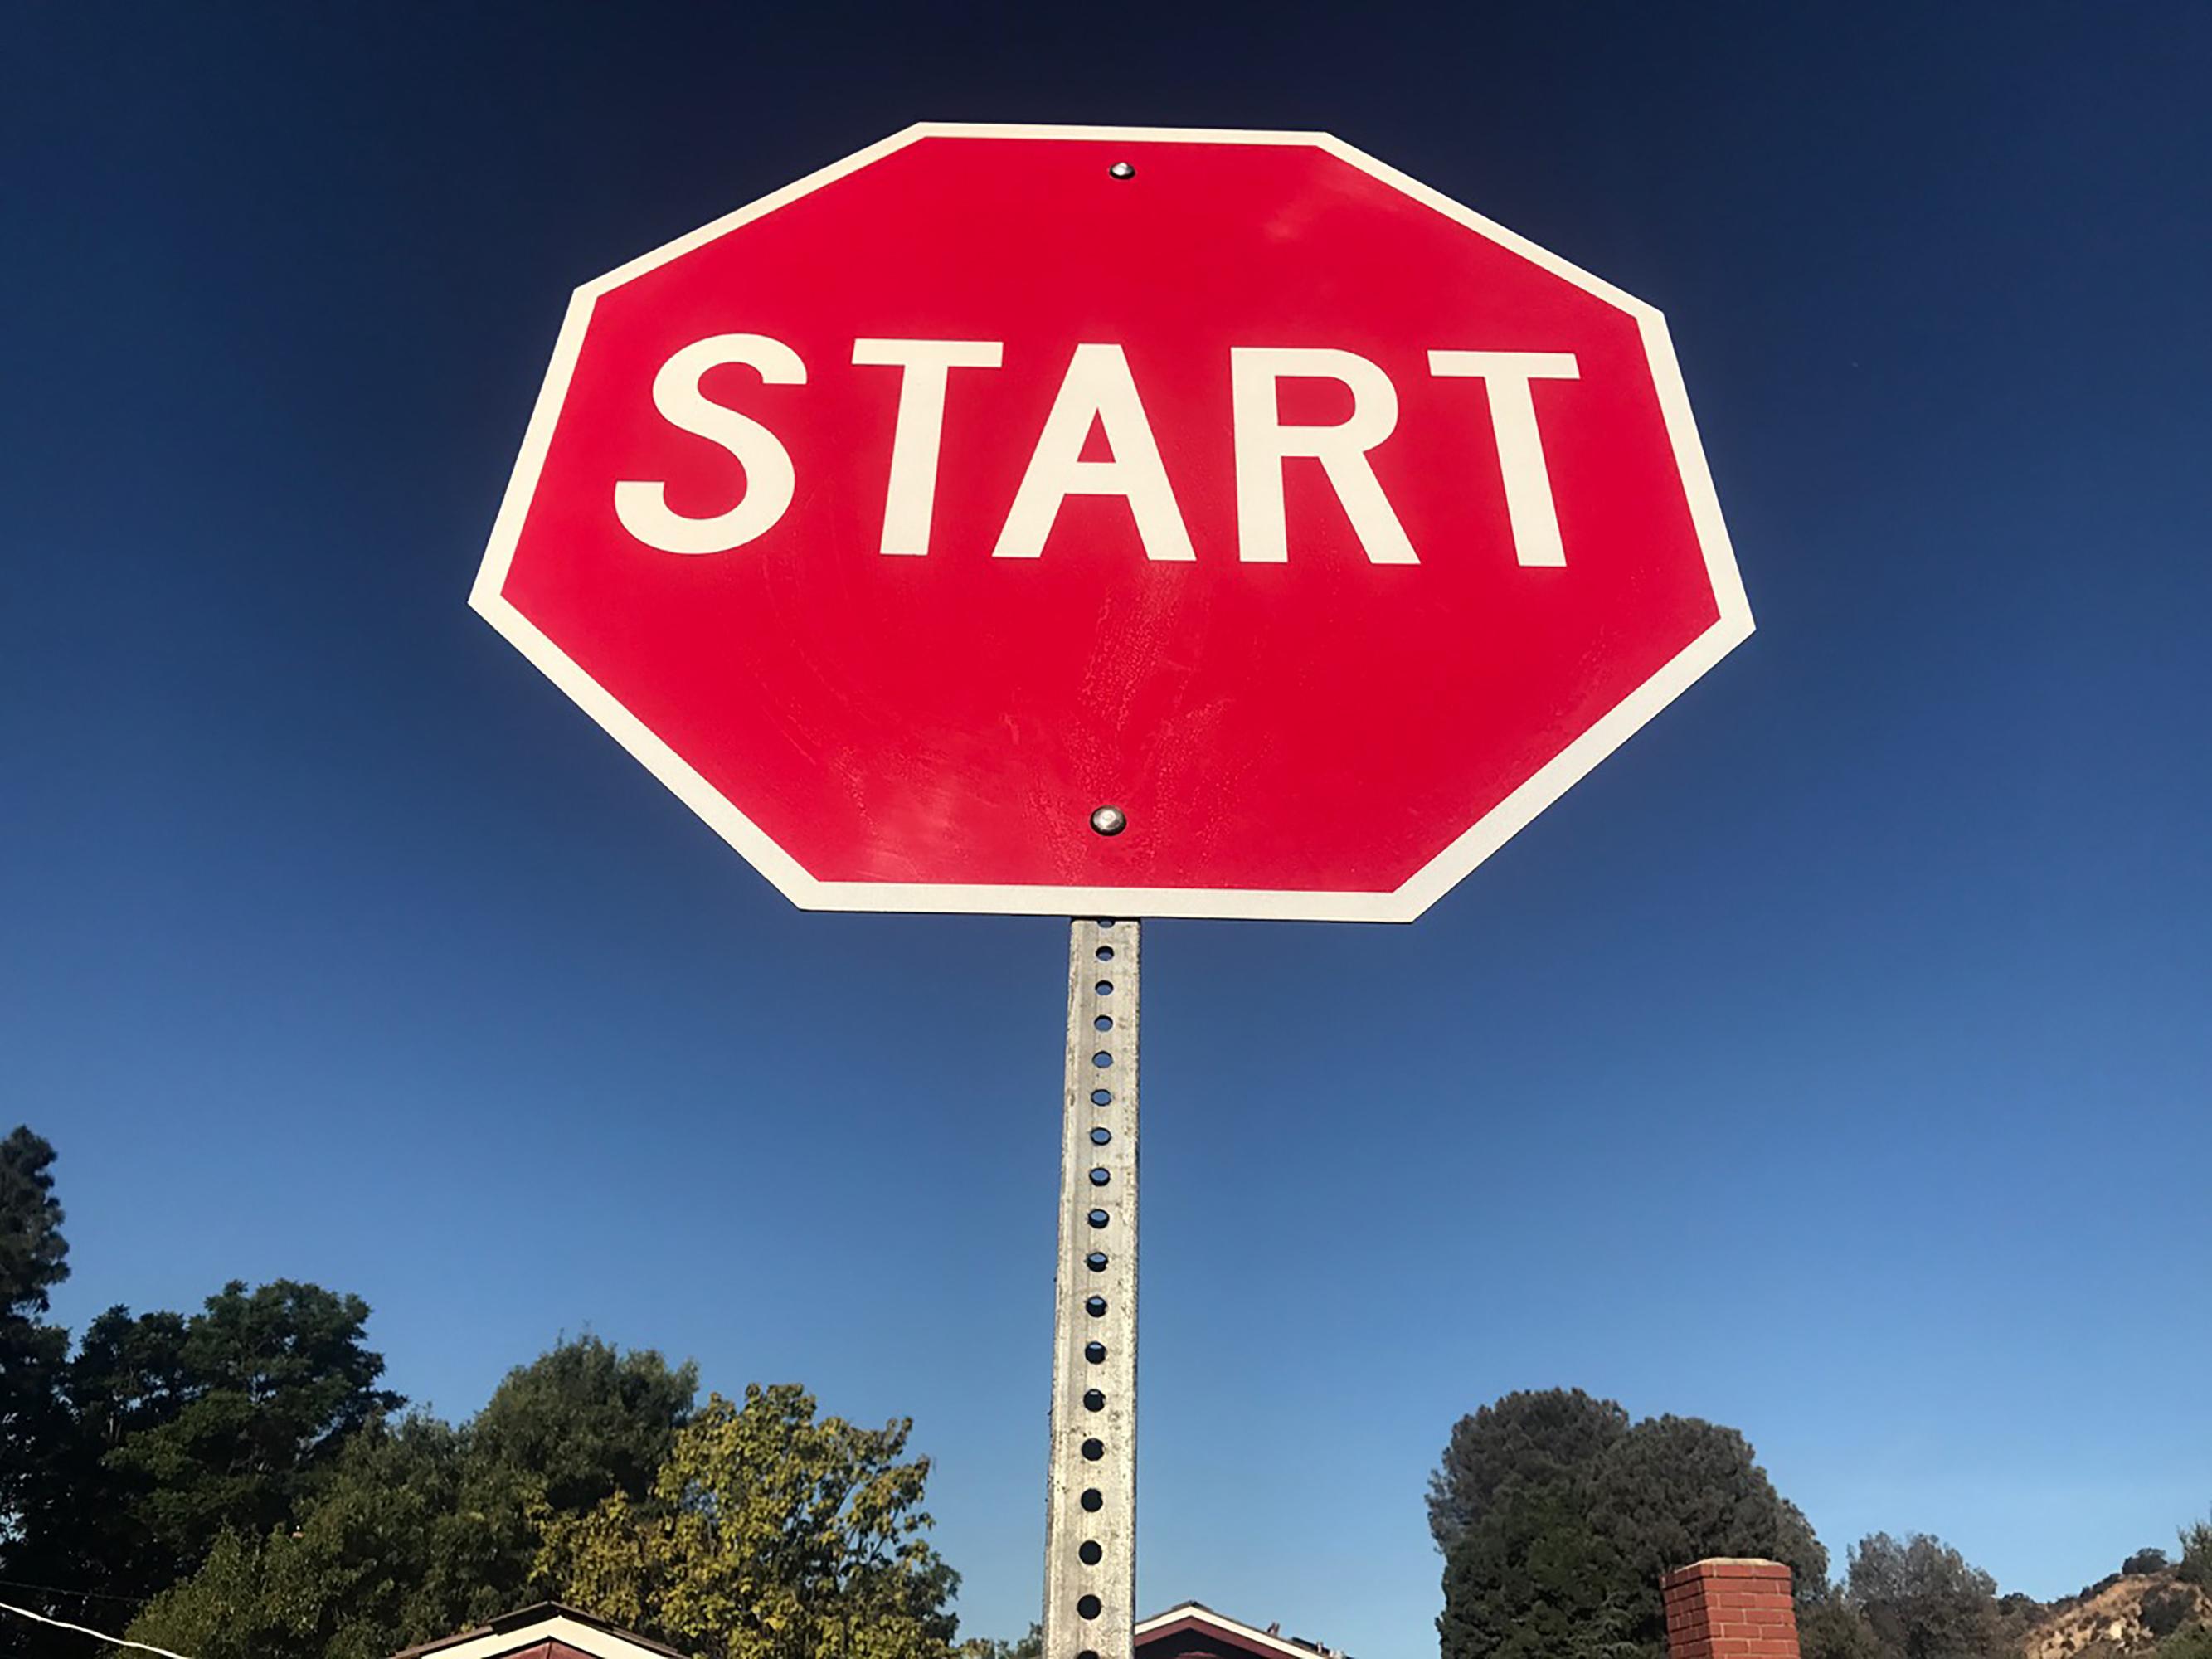 "Start" - Contemporary Street Sign Sculpture - Mixed Media Art by Scott Froschauer